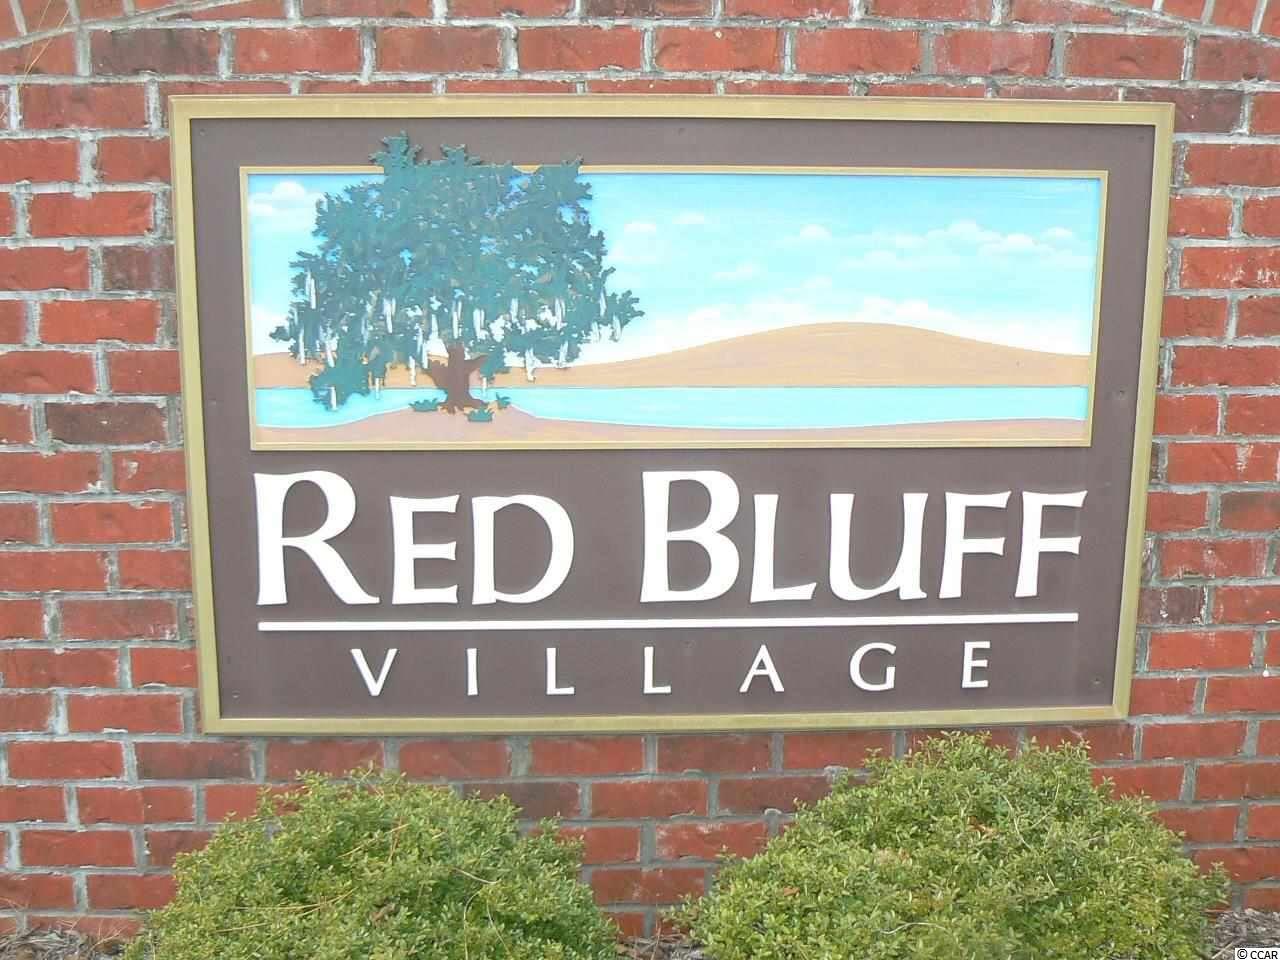 Lot 31, 81 Red Bluff Village Longs, SC 29568